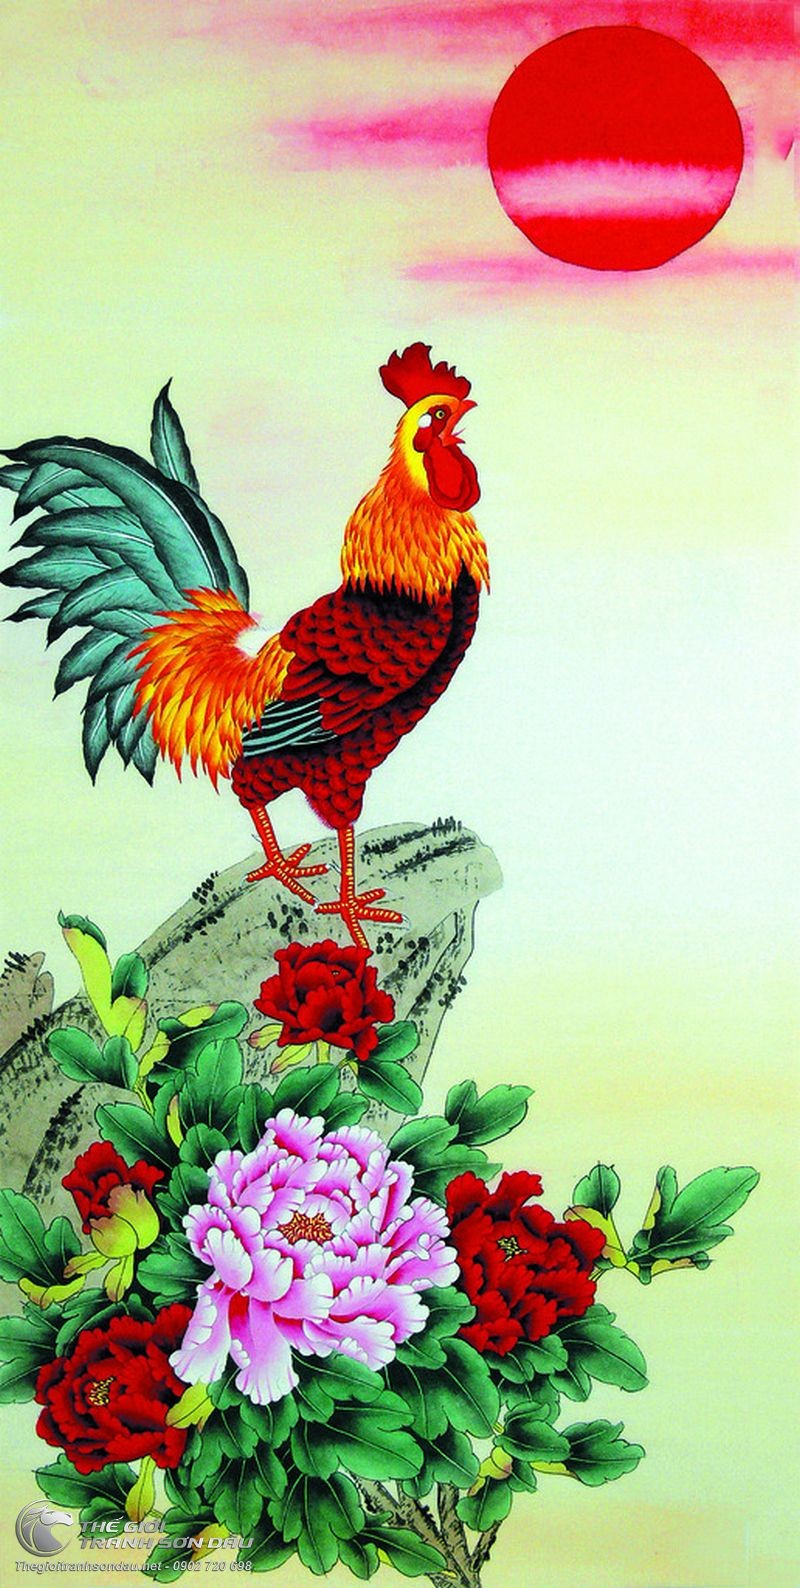 Bức tranh sơn dầu về gà trống và hoa mẫu đơn là một tác phẩm nghệ thuật đẹp mắt và sâu sắc, kết hợp giữa màu sắc tươi sáng và sự tinh tế của bức tranh. Hãy chiêm ngưỡng những đường nét tuyệt mỹ và cảm nhận trọn vẹn tinh thần nghệ thuật của tác phẩm này.